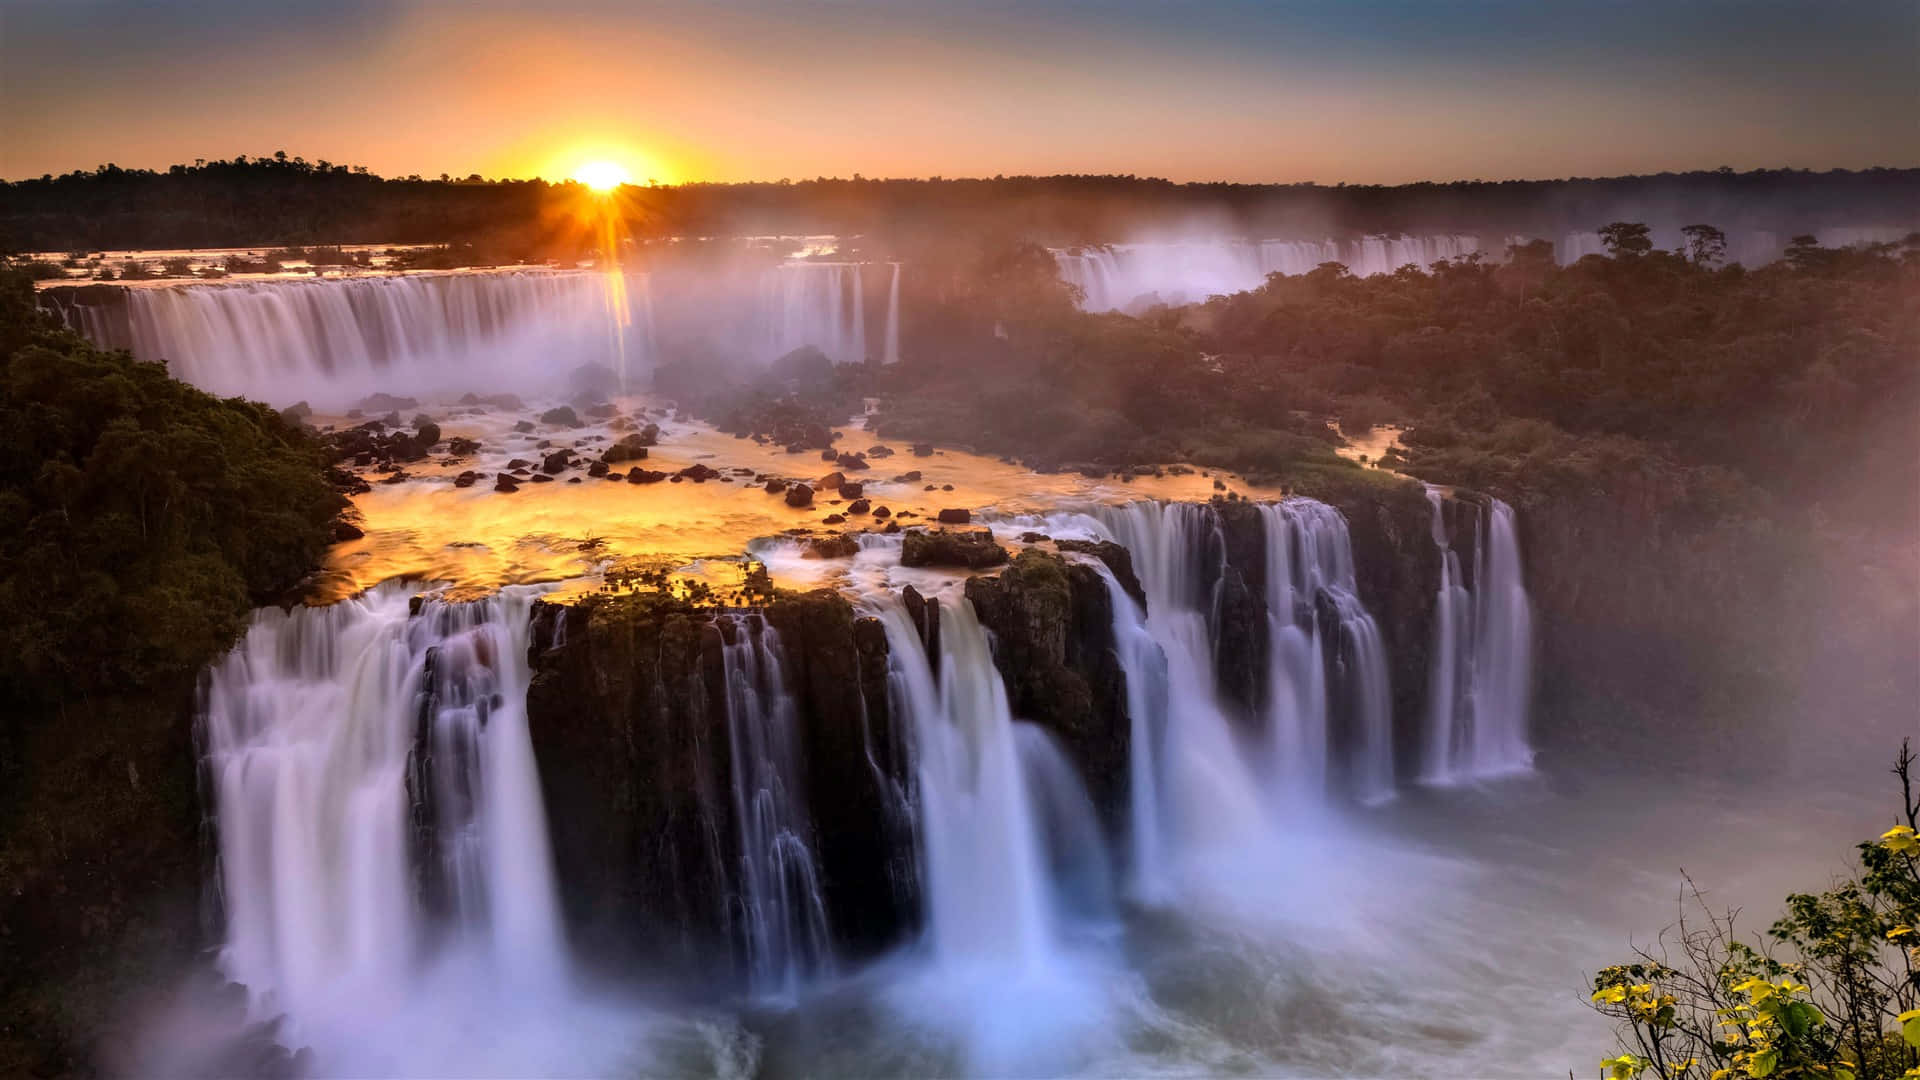 Iguazuwasserfälle Bei Sonnenuntergang Wallpaper